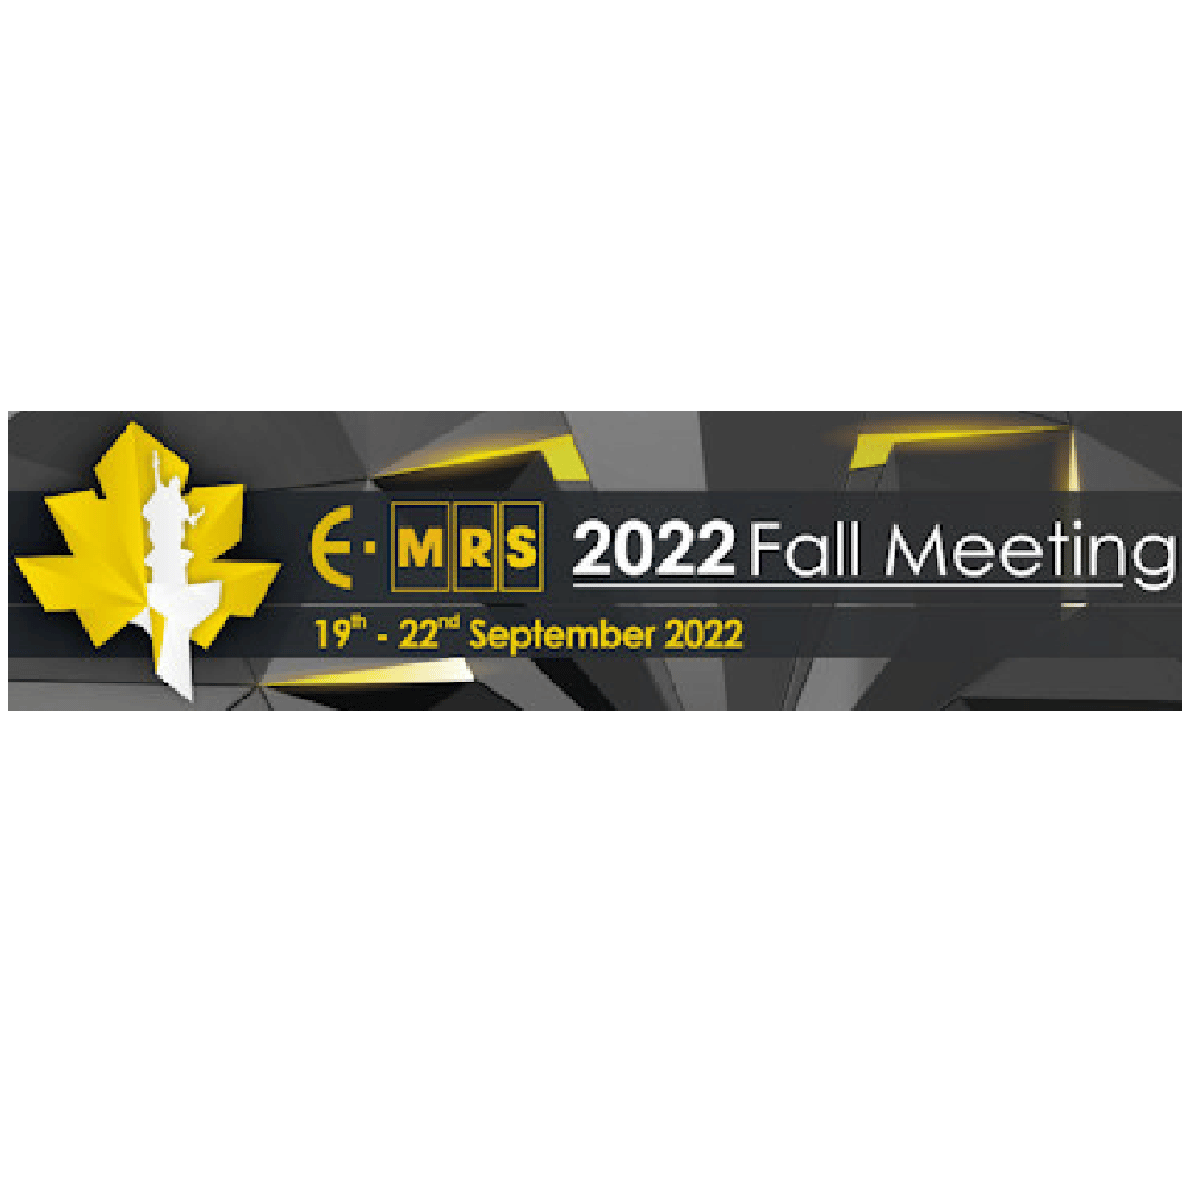 E-MRS 2022 Fall Meeting